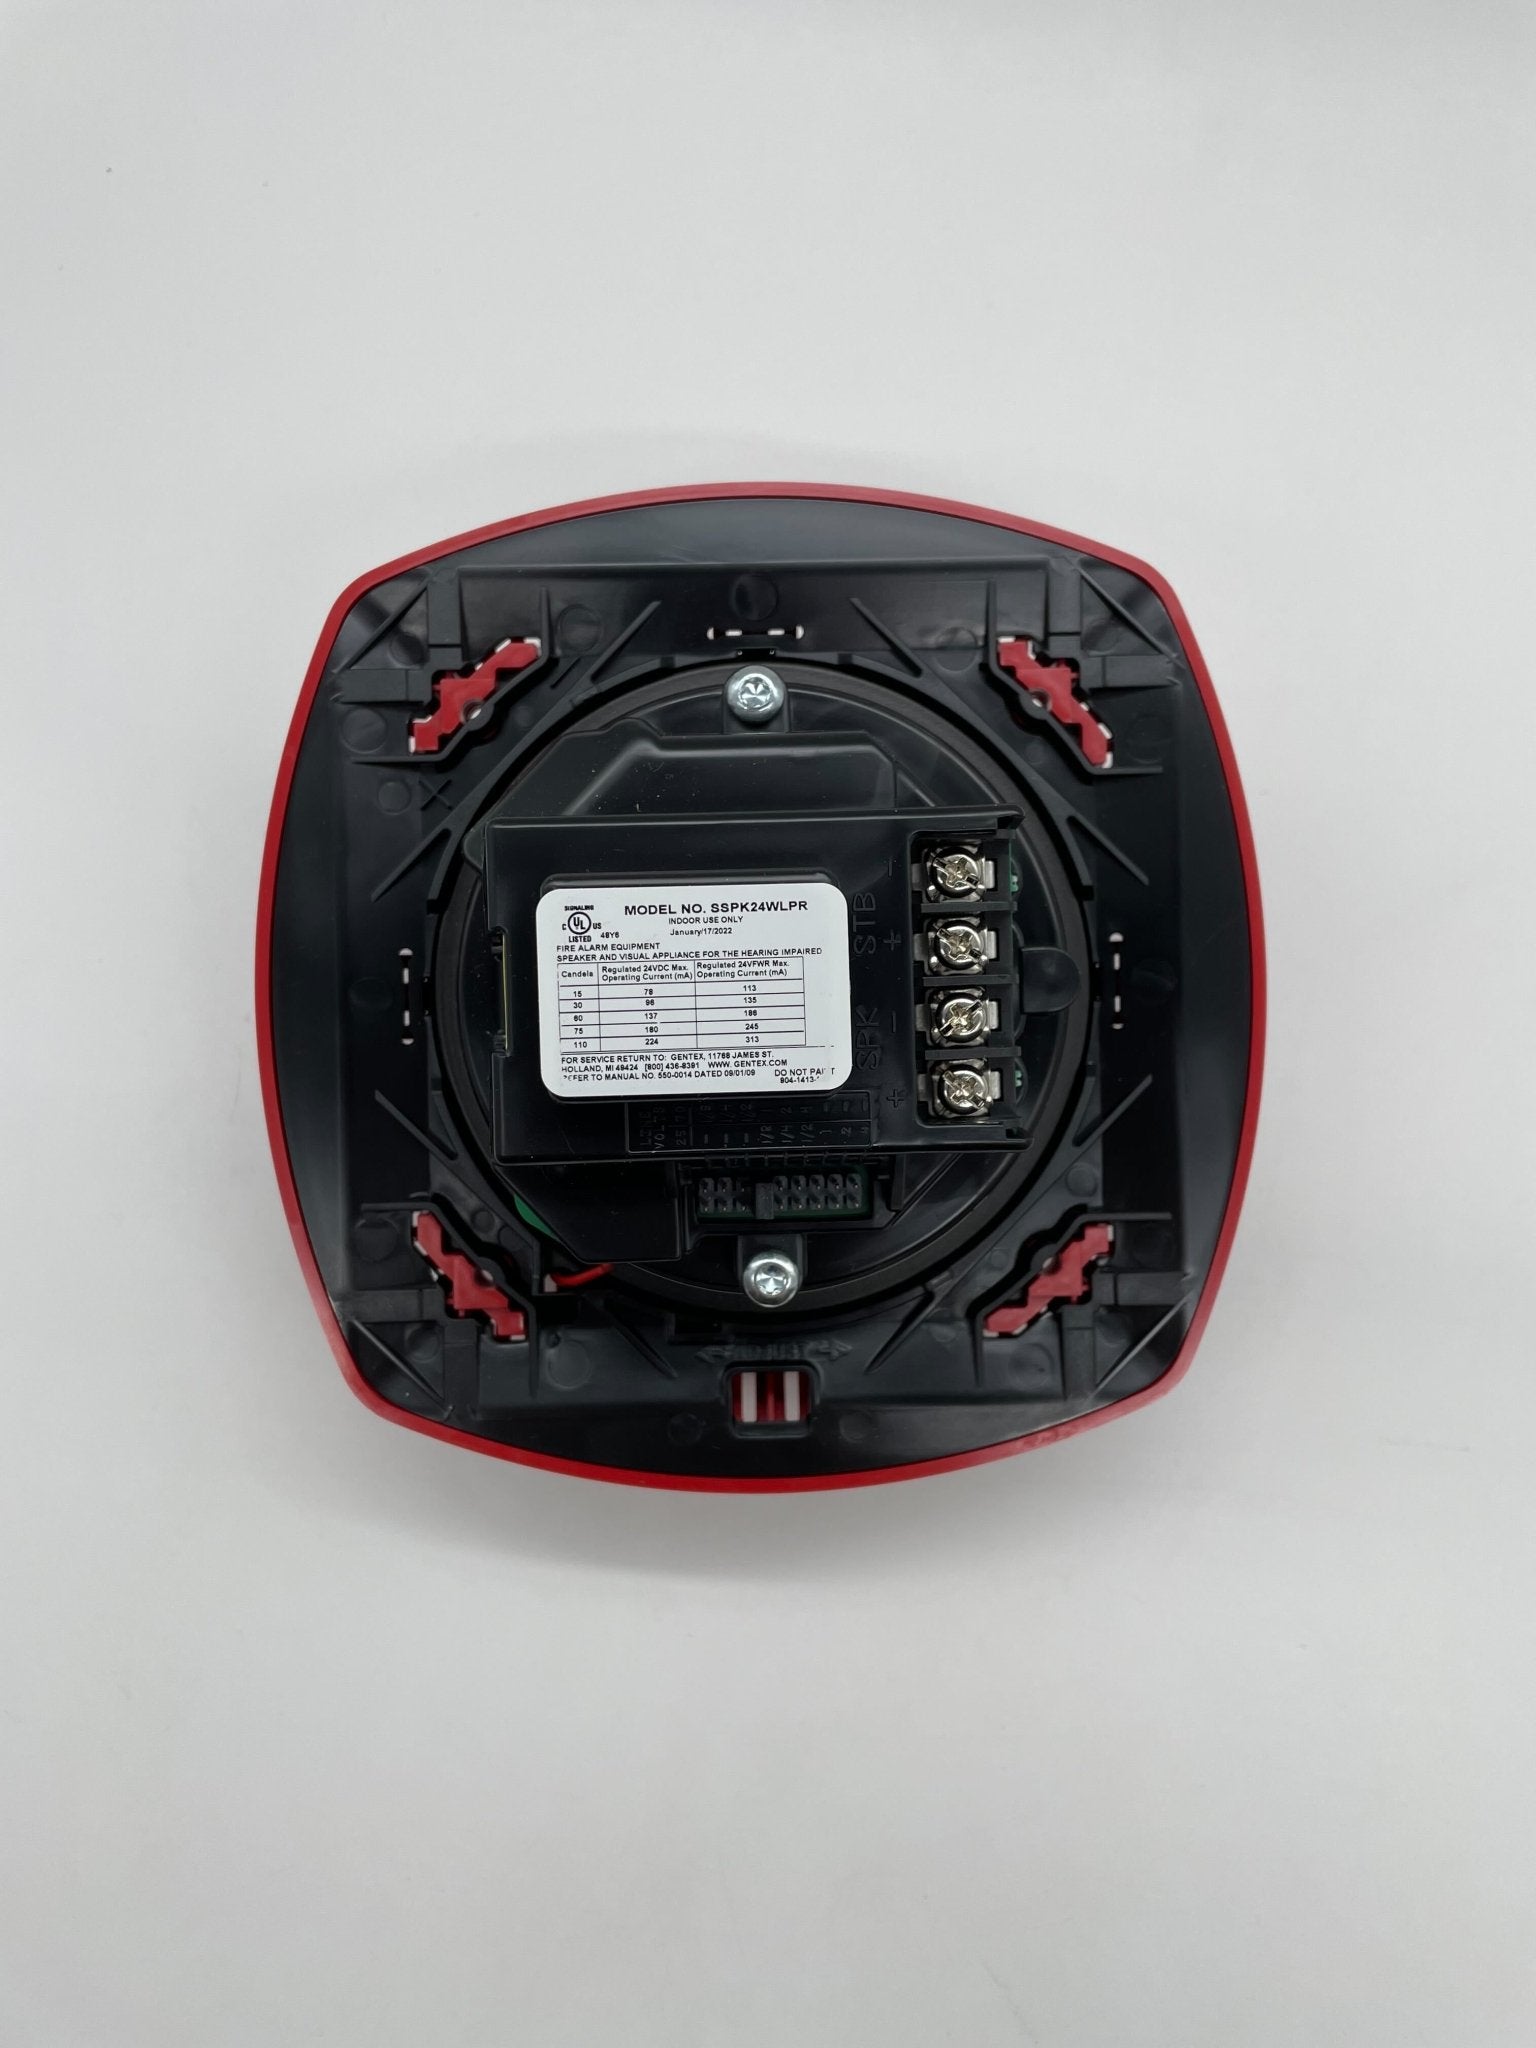 Gentex SSPK24WLPR - The Fire Alarm Supplier